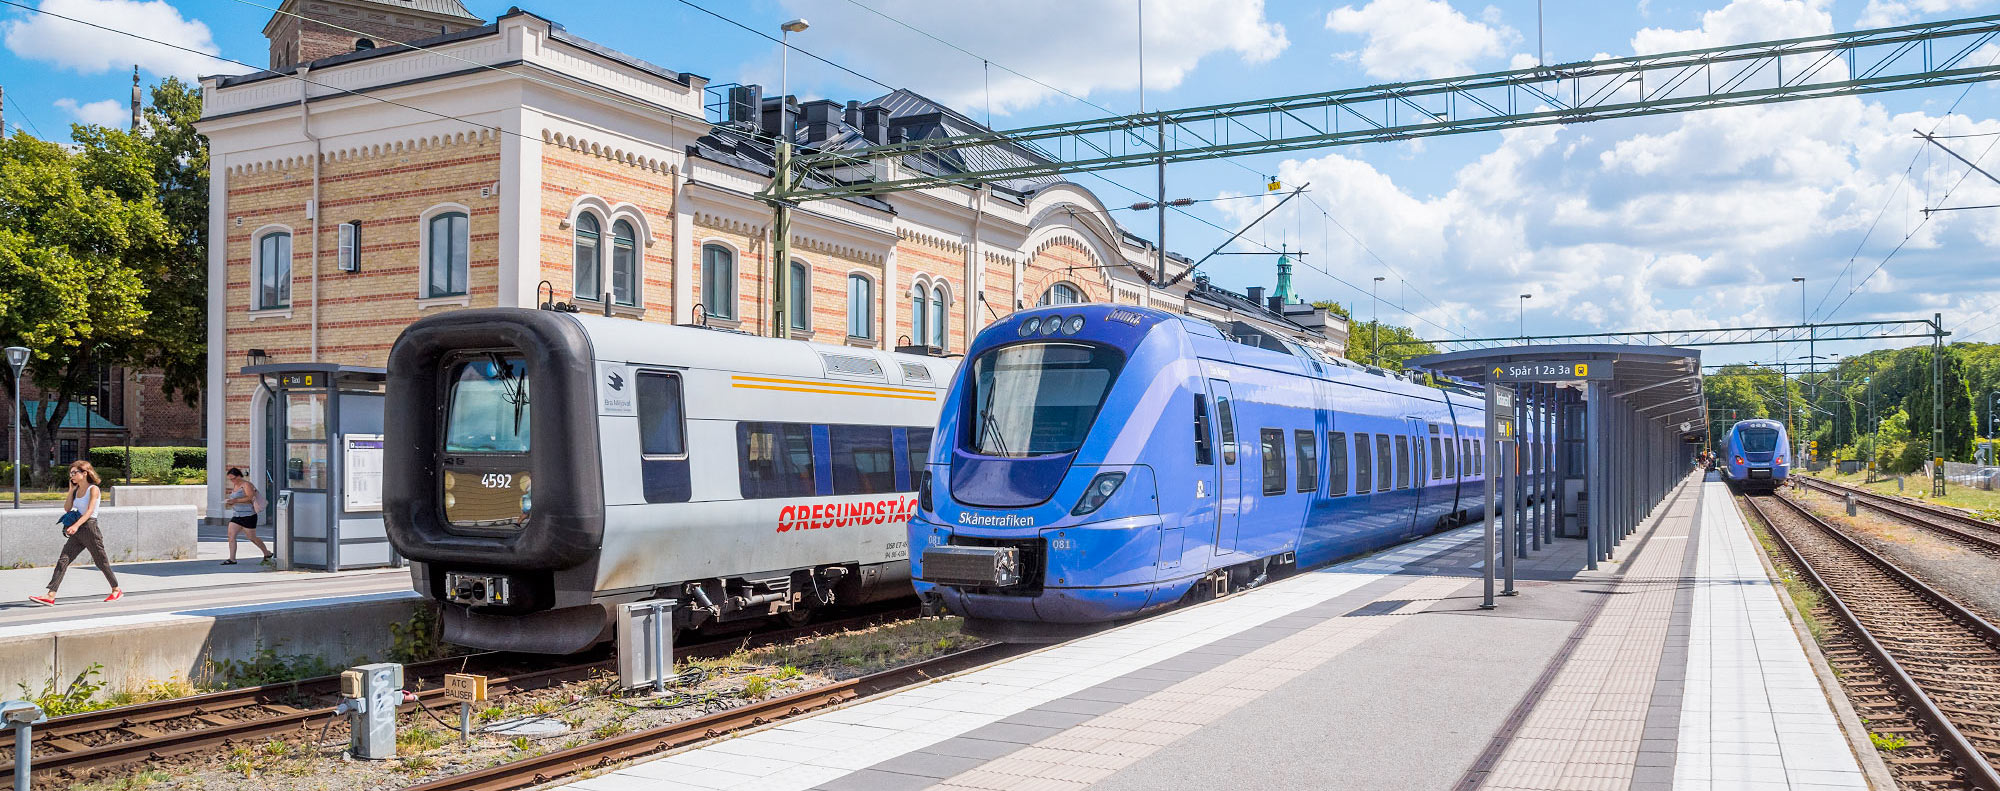 Bild: Öresundståg och pågatåg i Kristianstad 2018